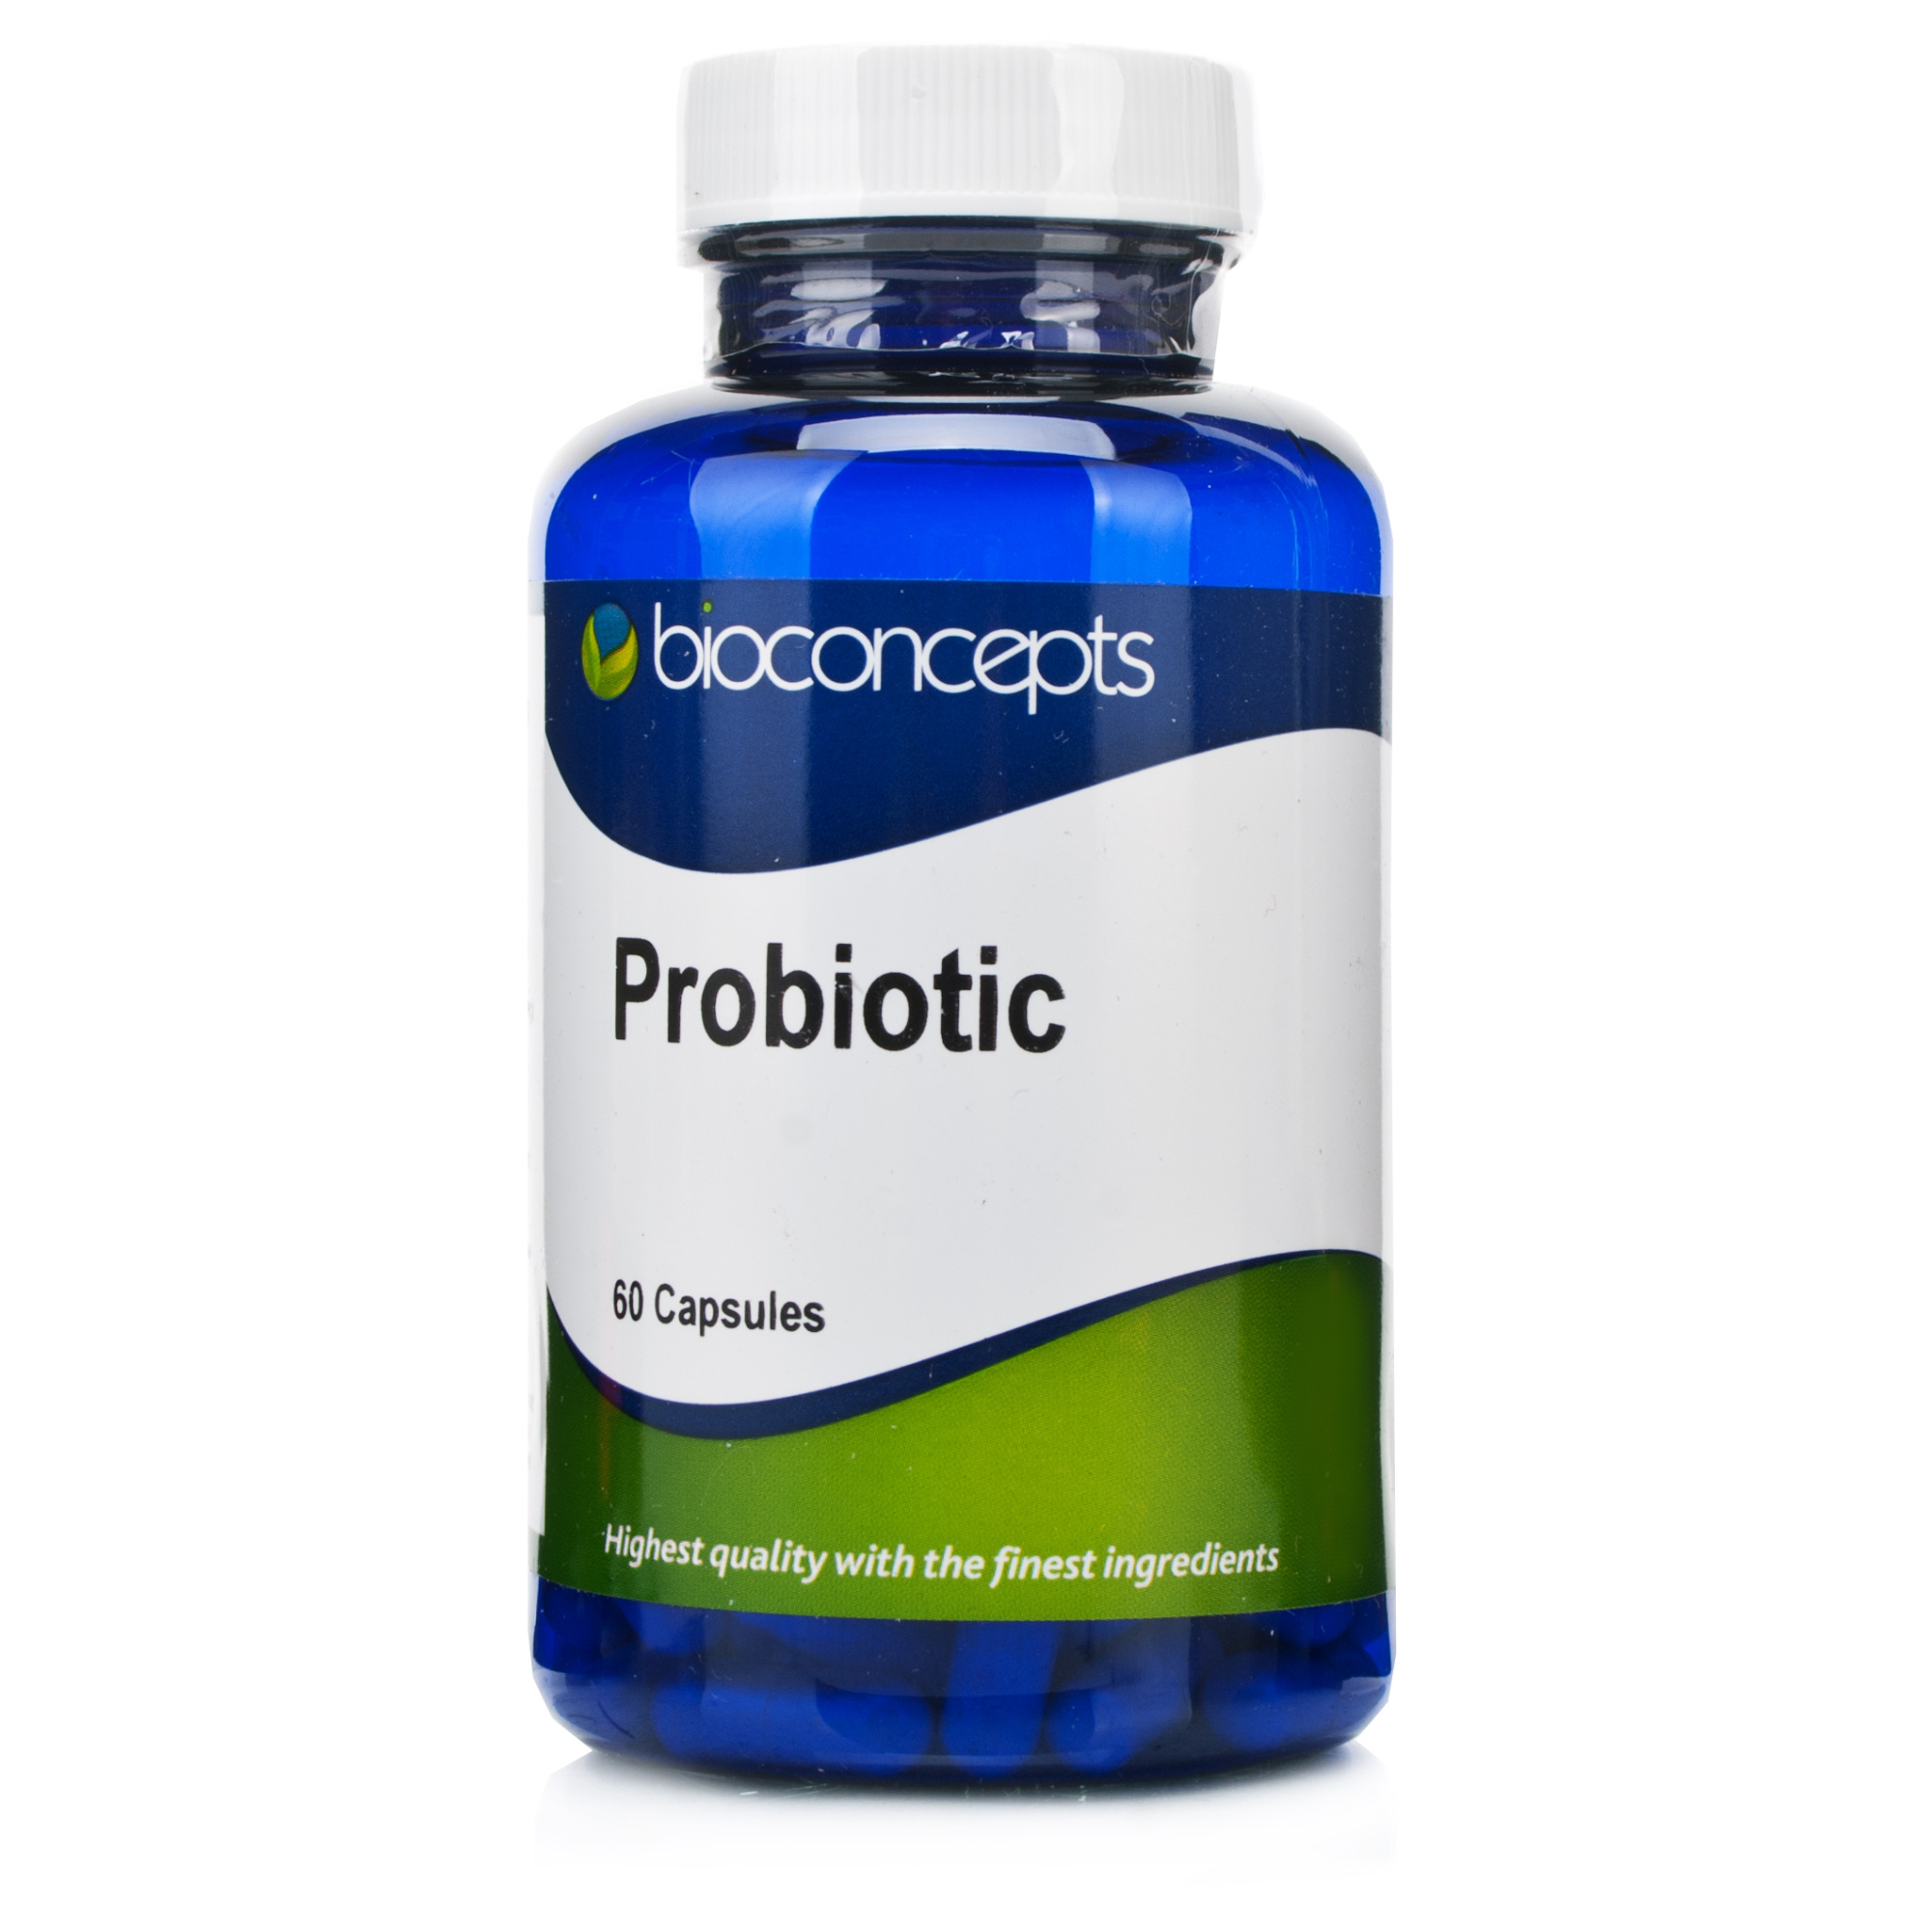 Bioconcepts Probiotic Capsules